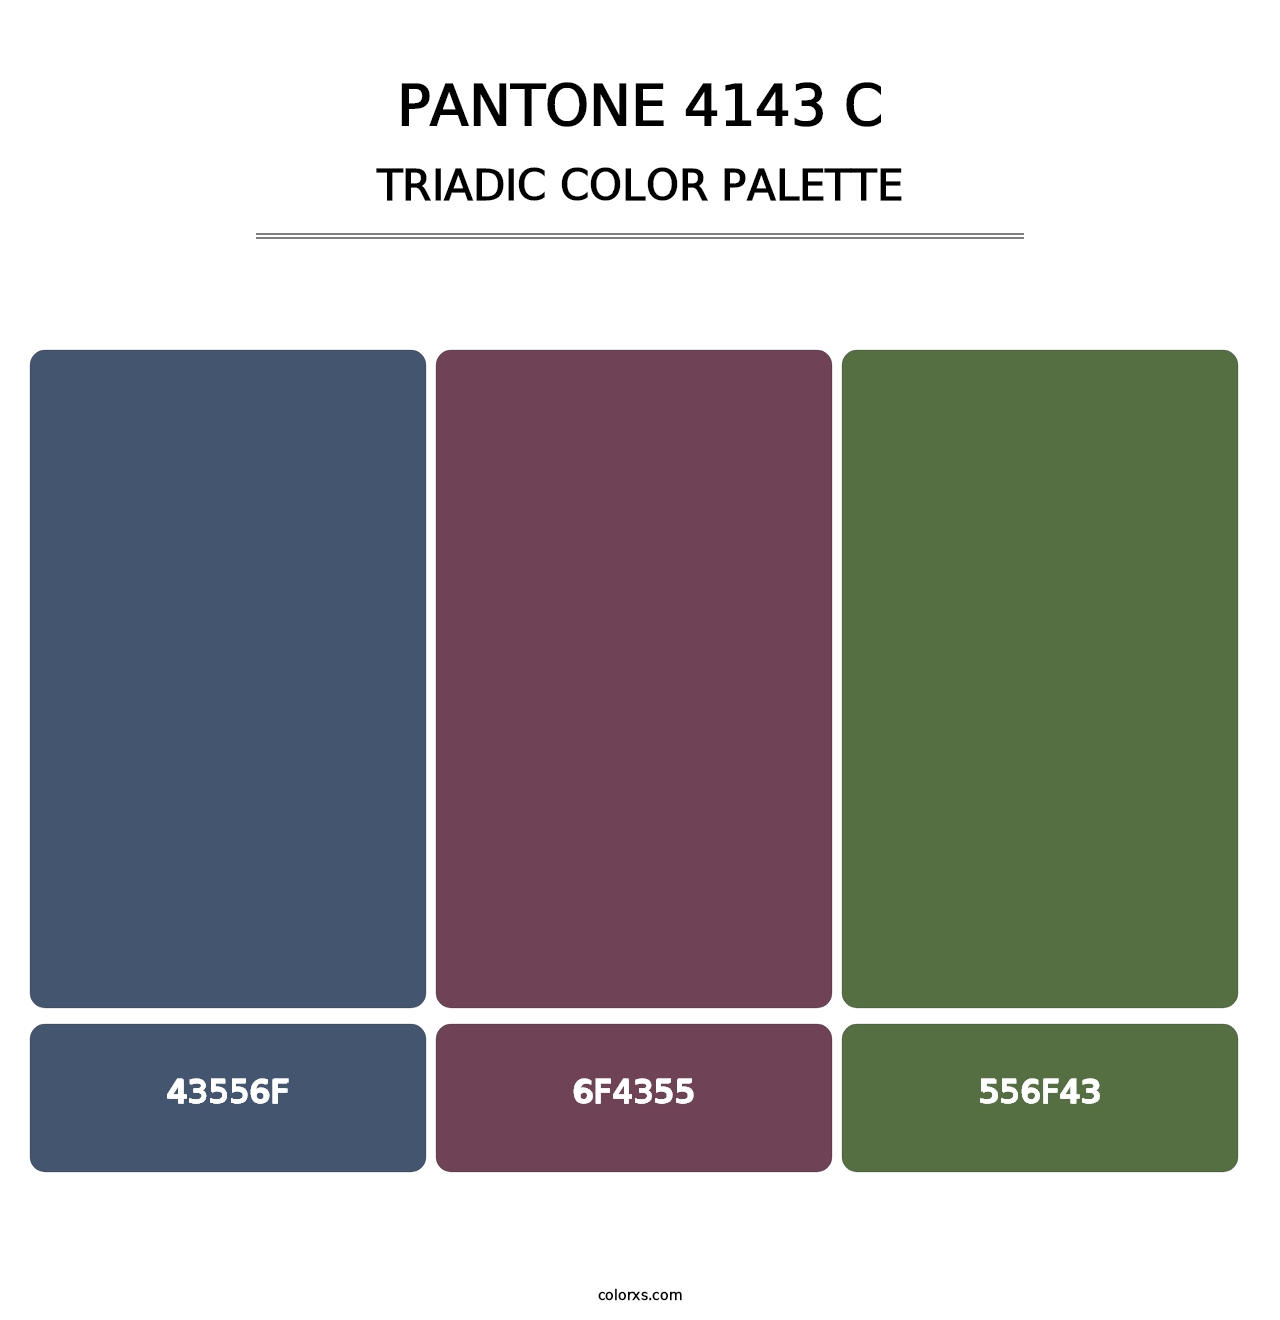 PANTONE 4143 C - Triadic Color Palette